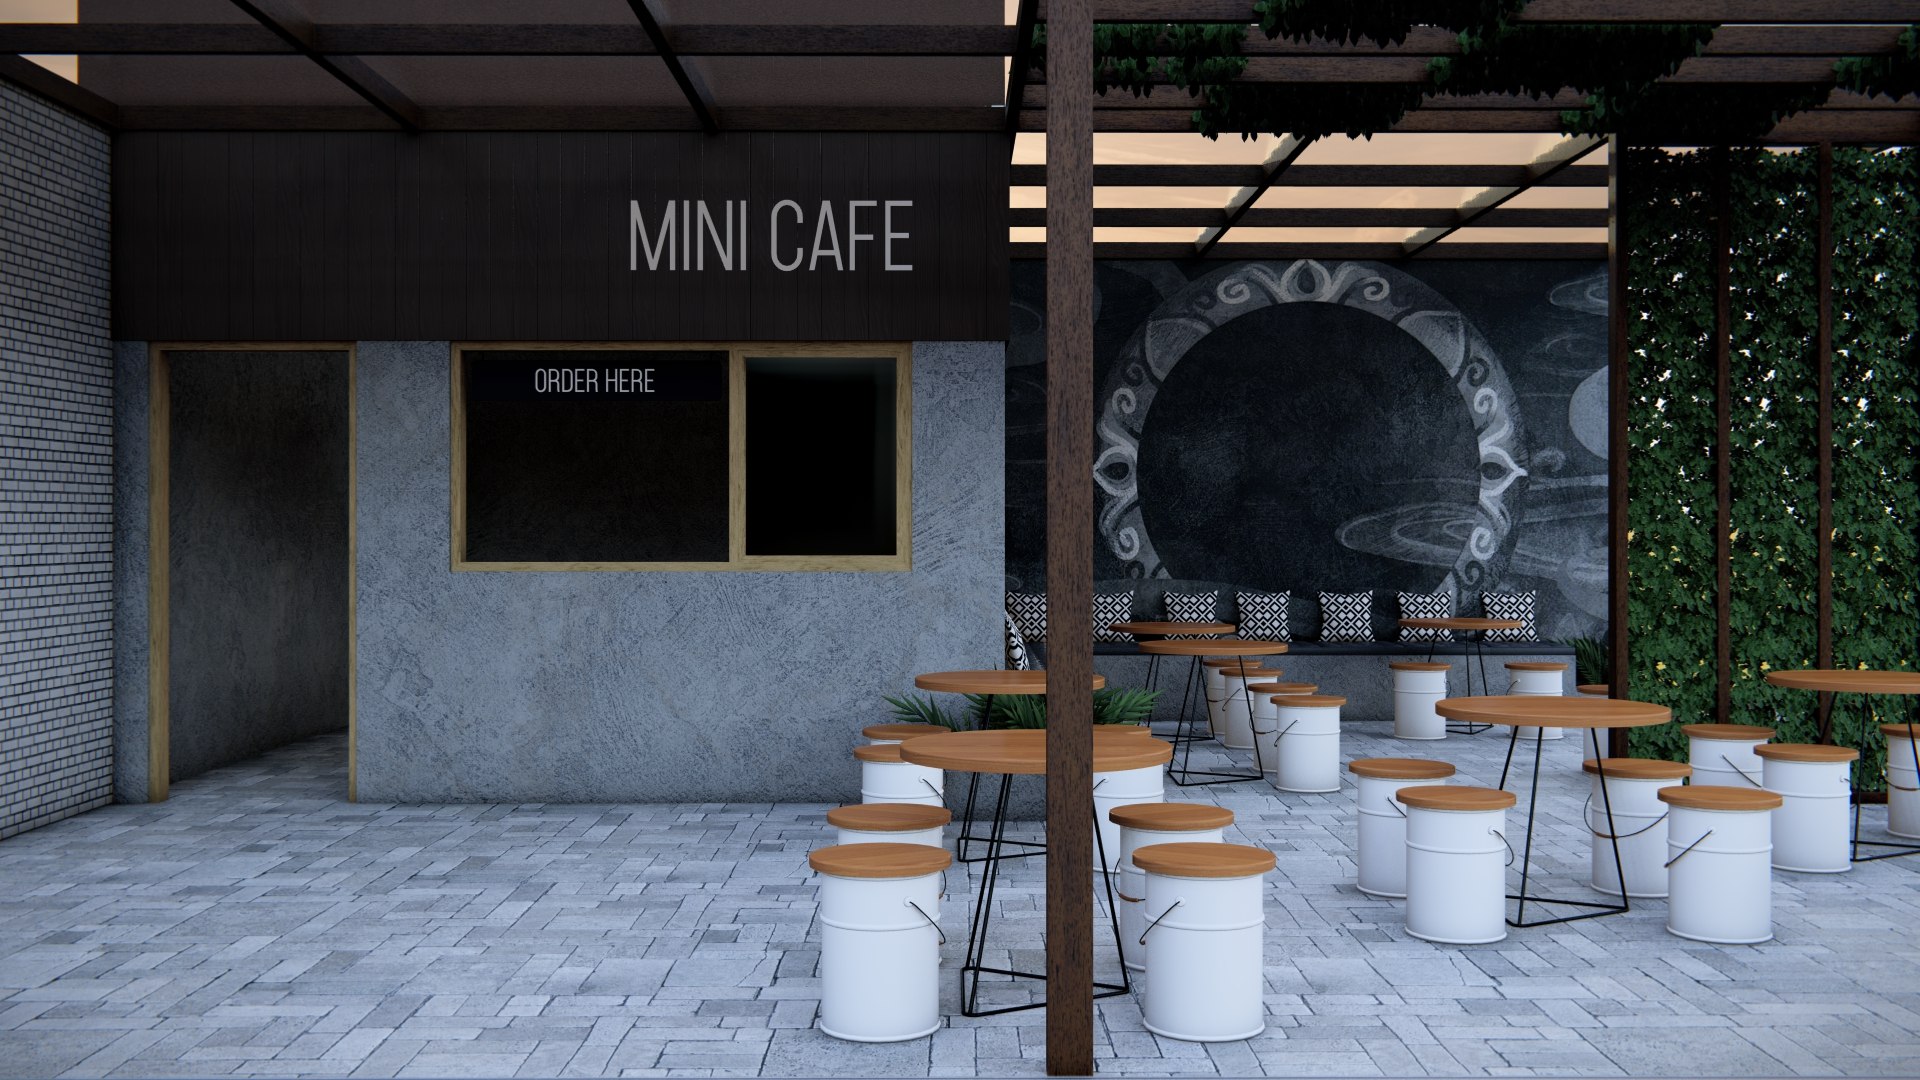 Mini cafe